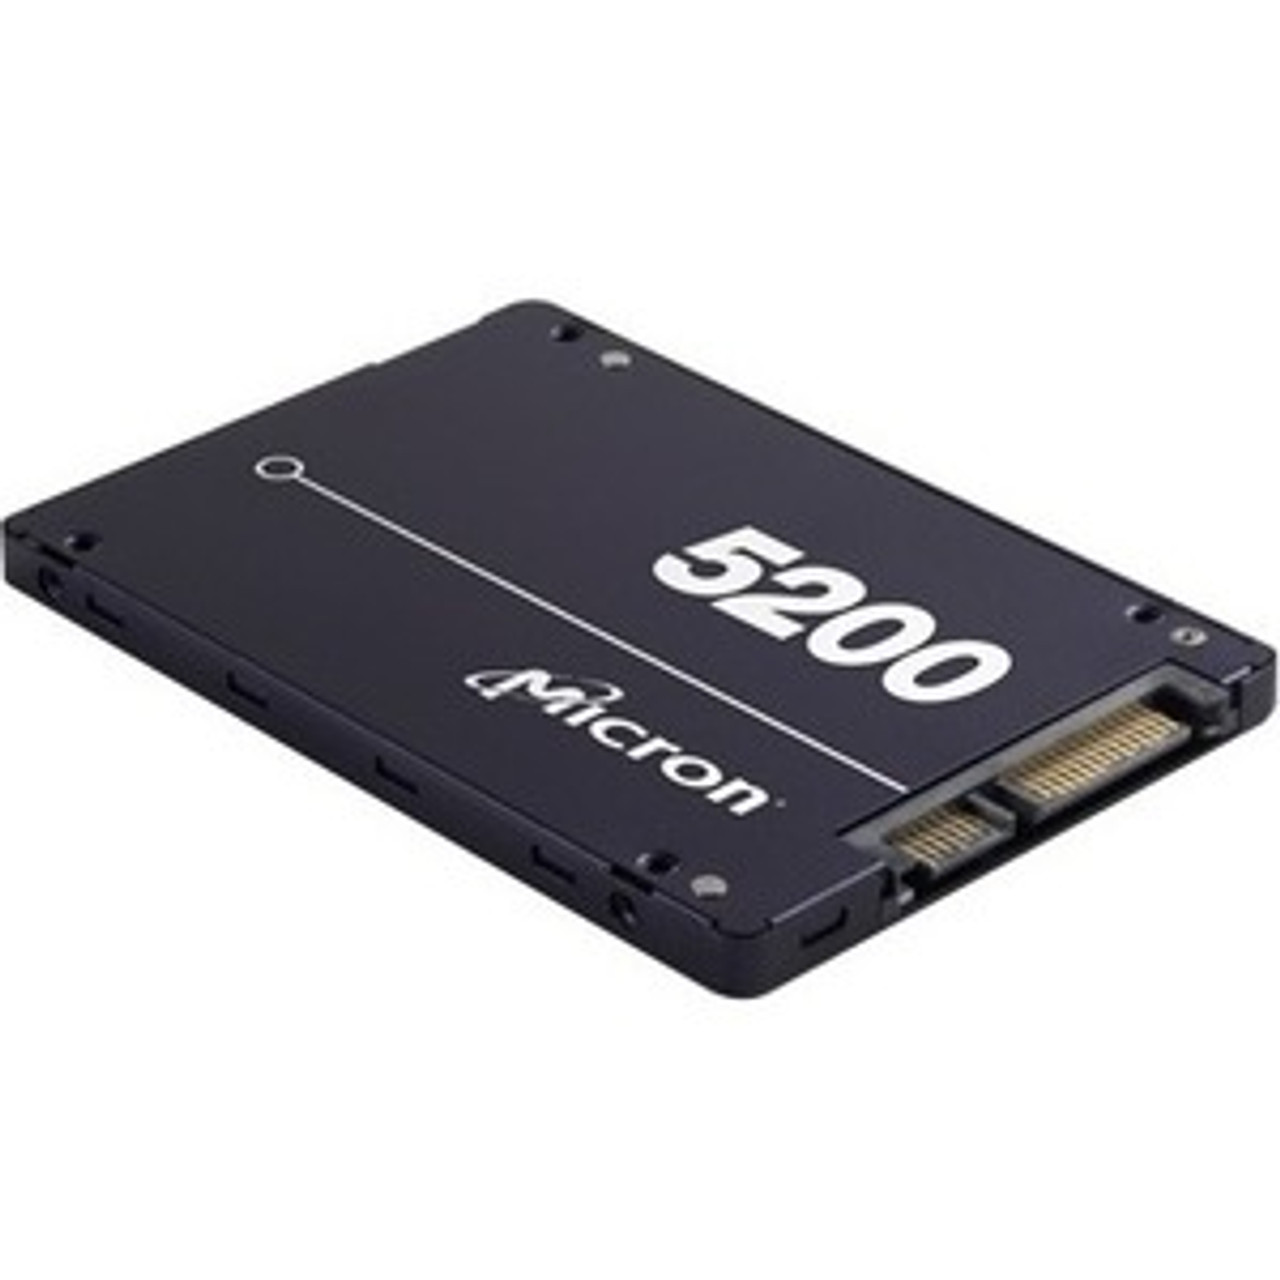 MTFDDAK960TDD1AT1ZAB Micron 5200 960GB TLC SATA 6Gbps 2.5-inch Internal Solid State Drive (SSD)